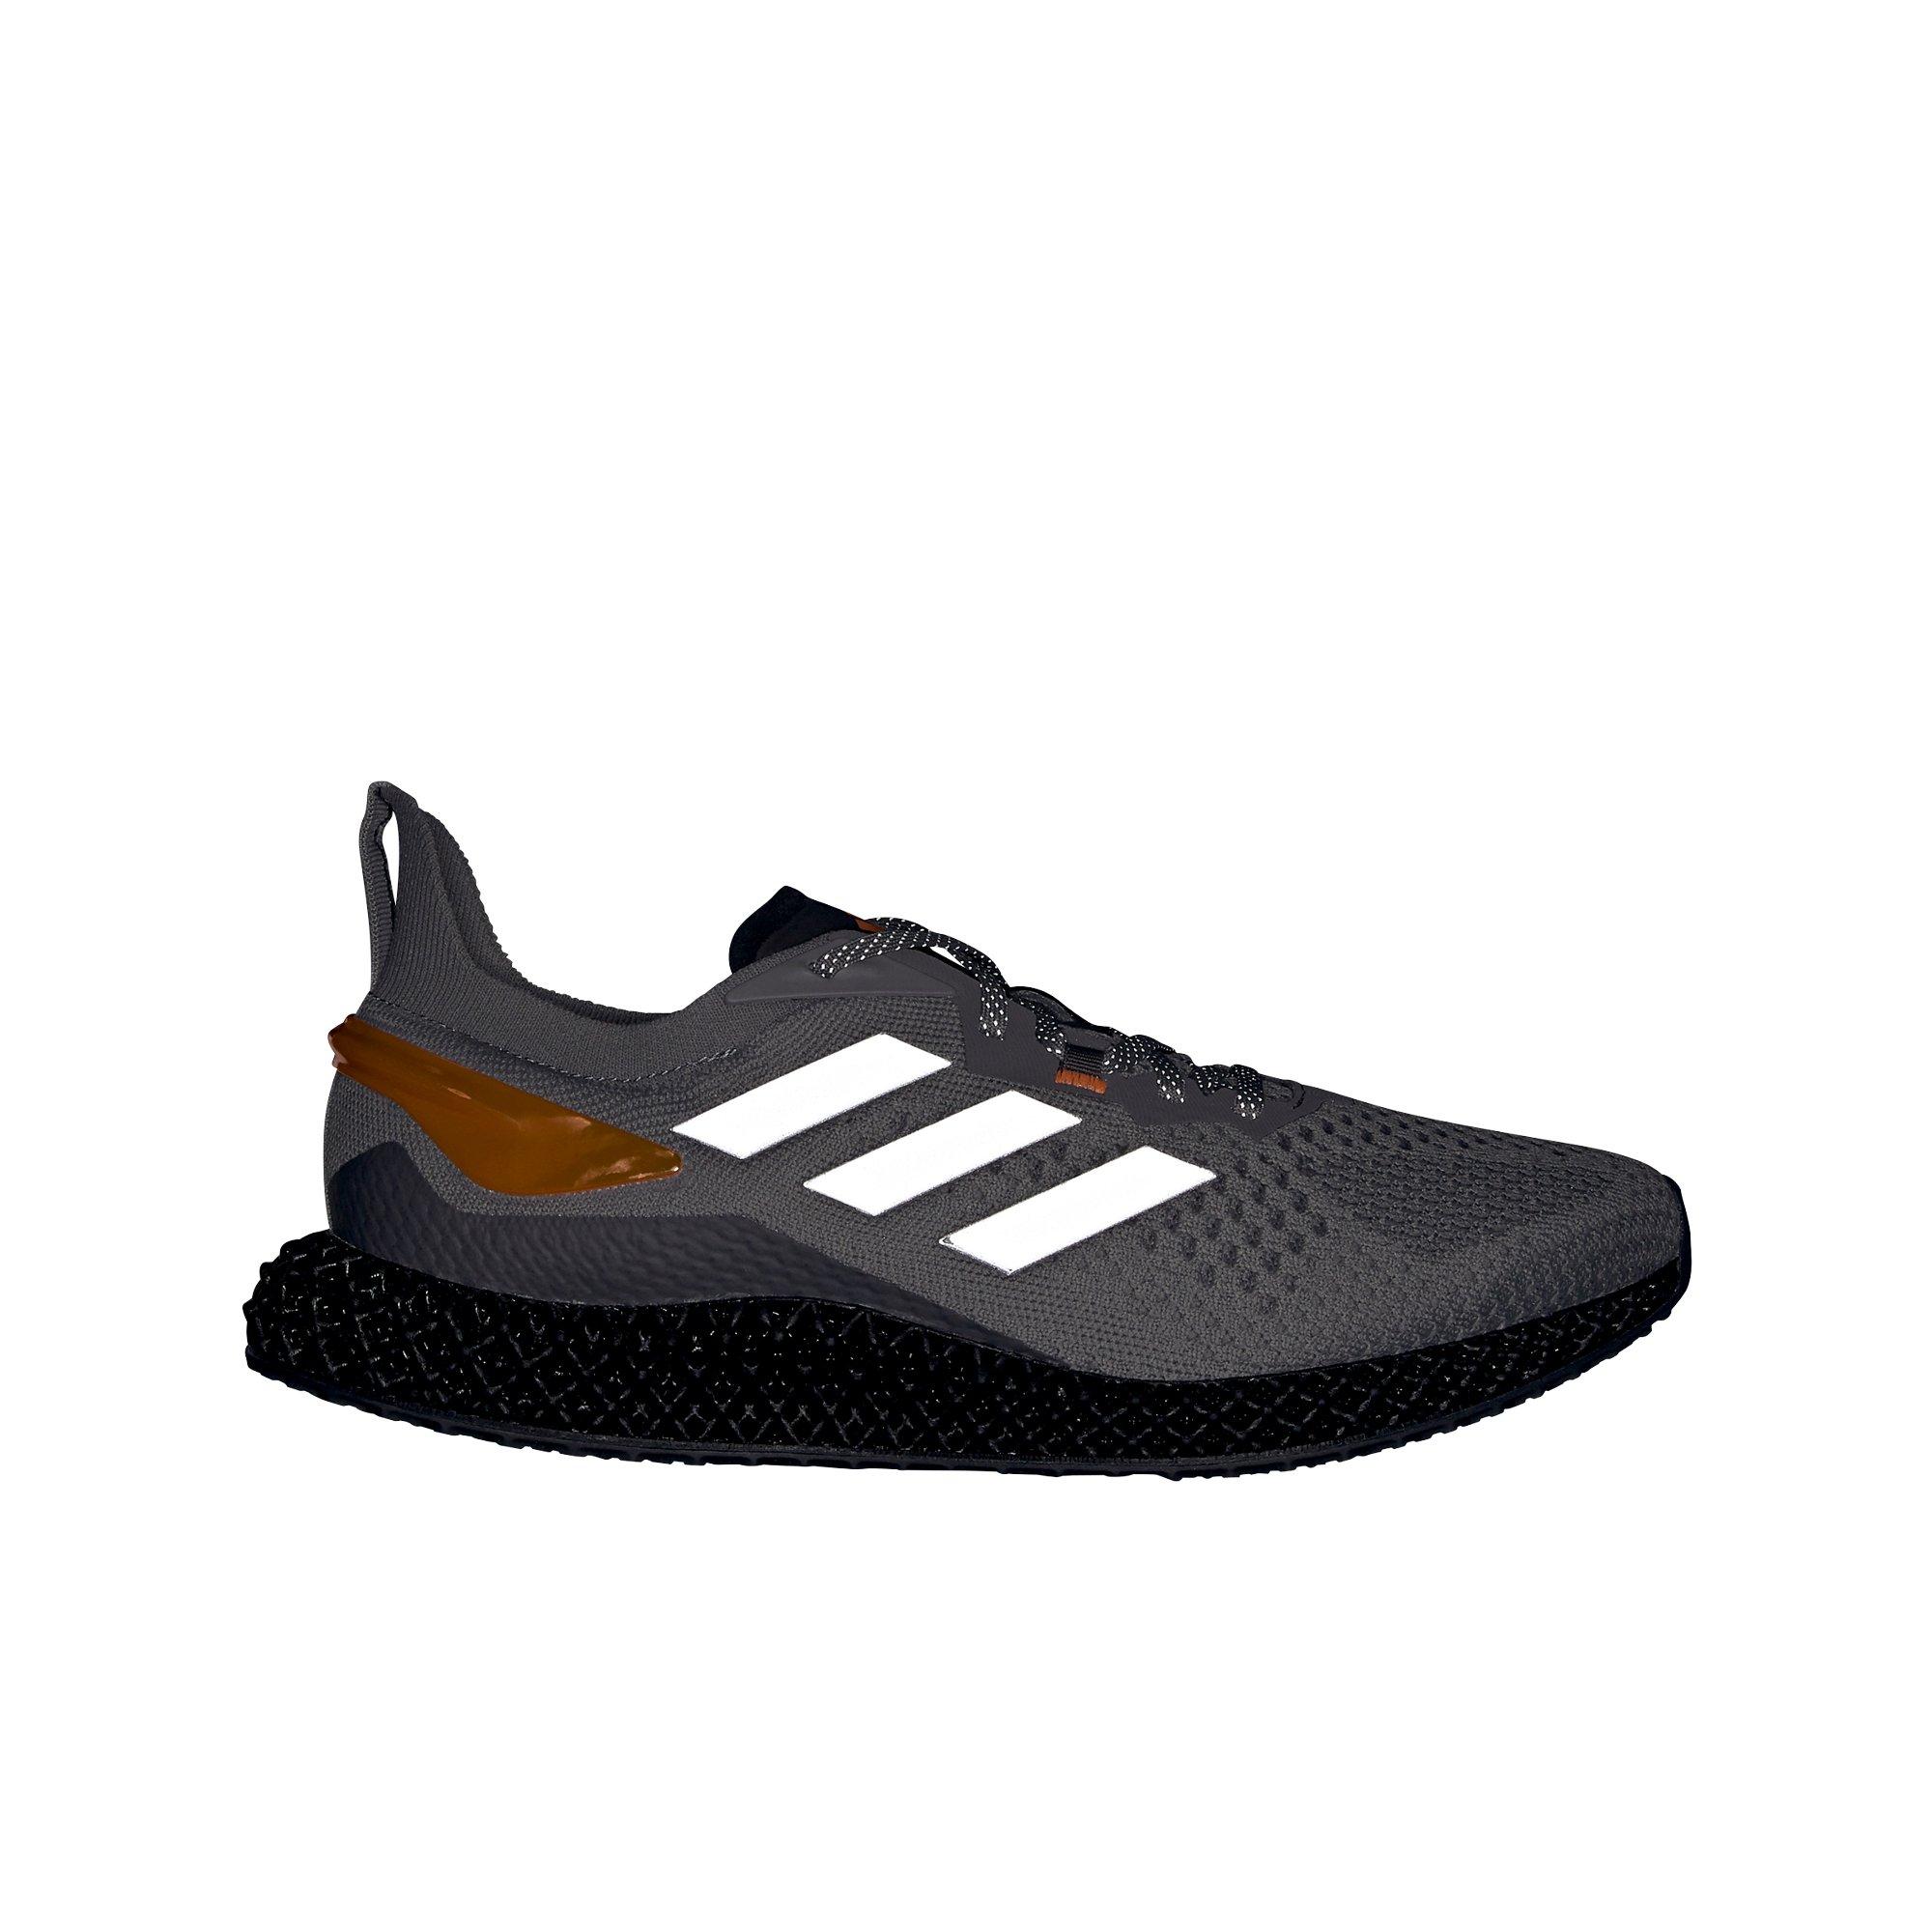 hibbett sports adidas shoes